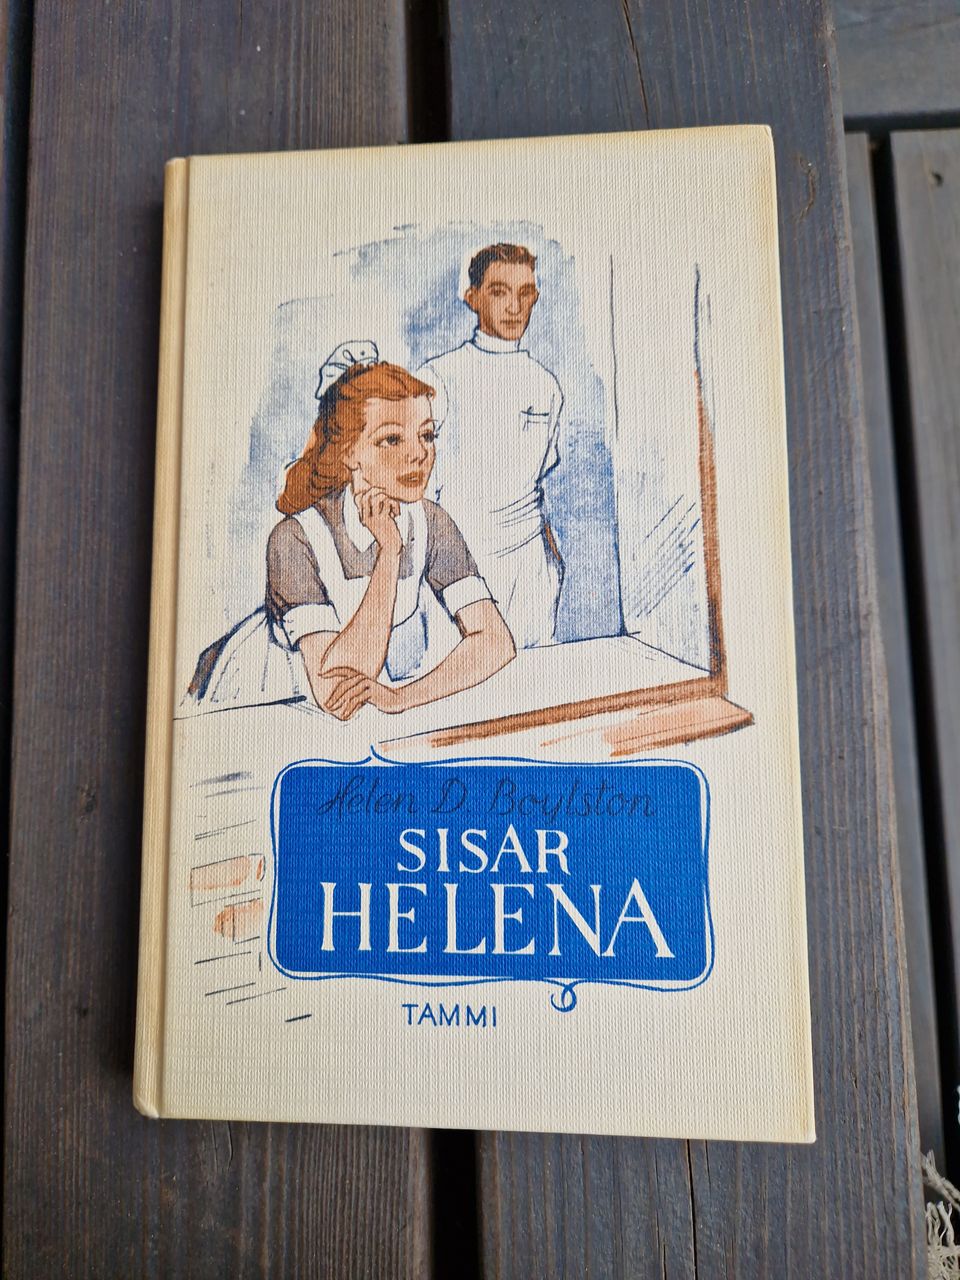 Helena kirjoja